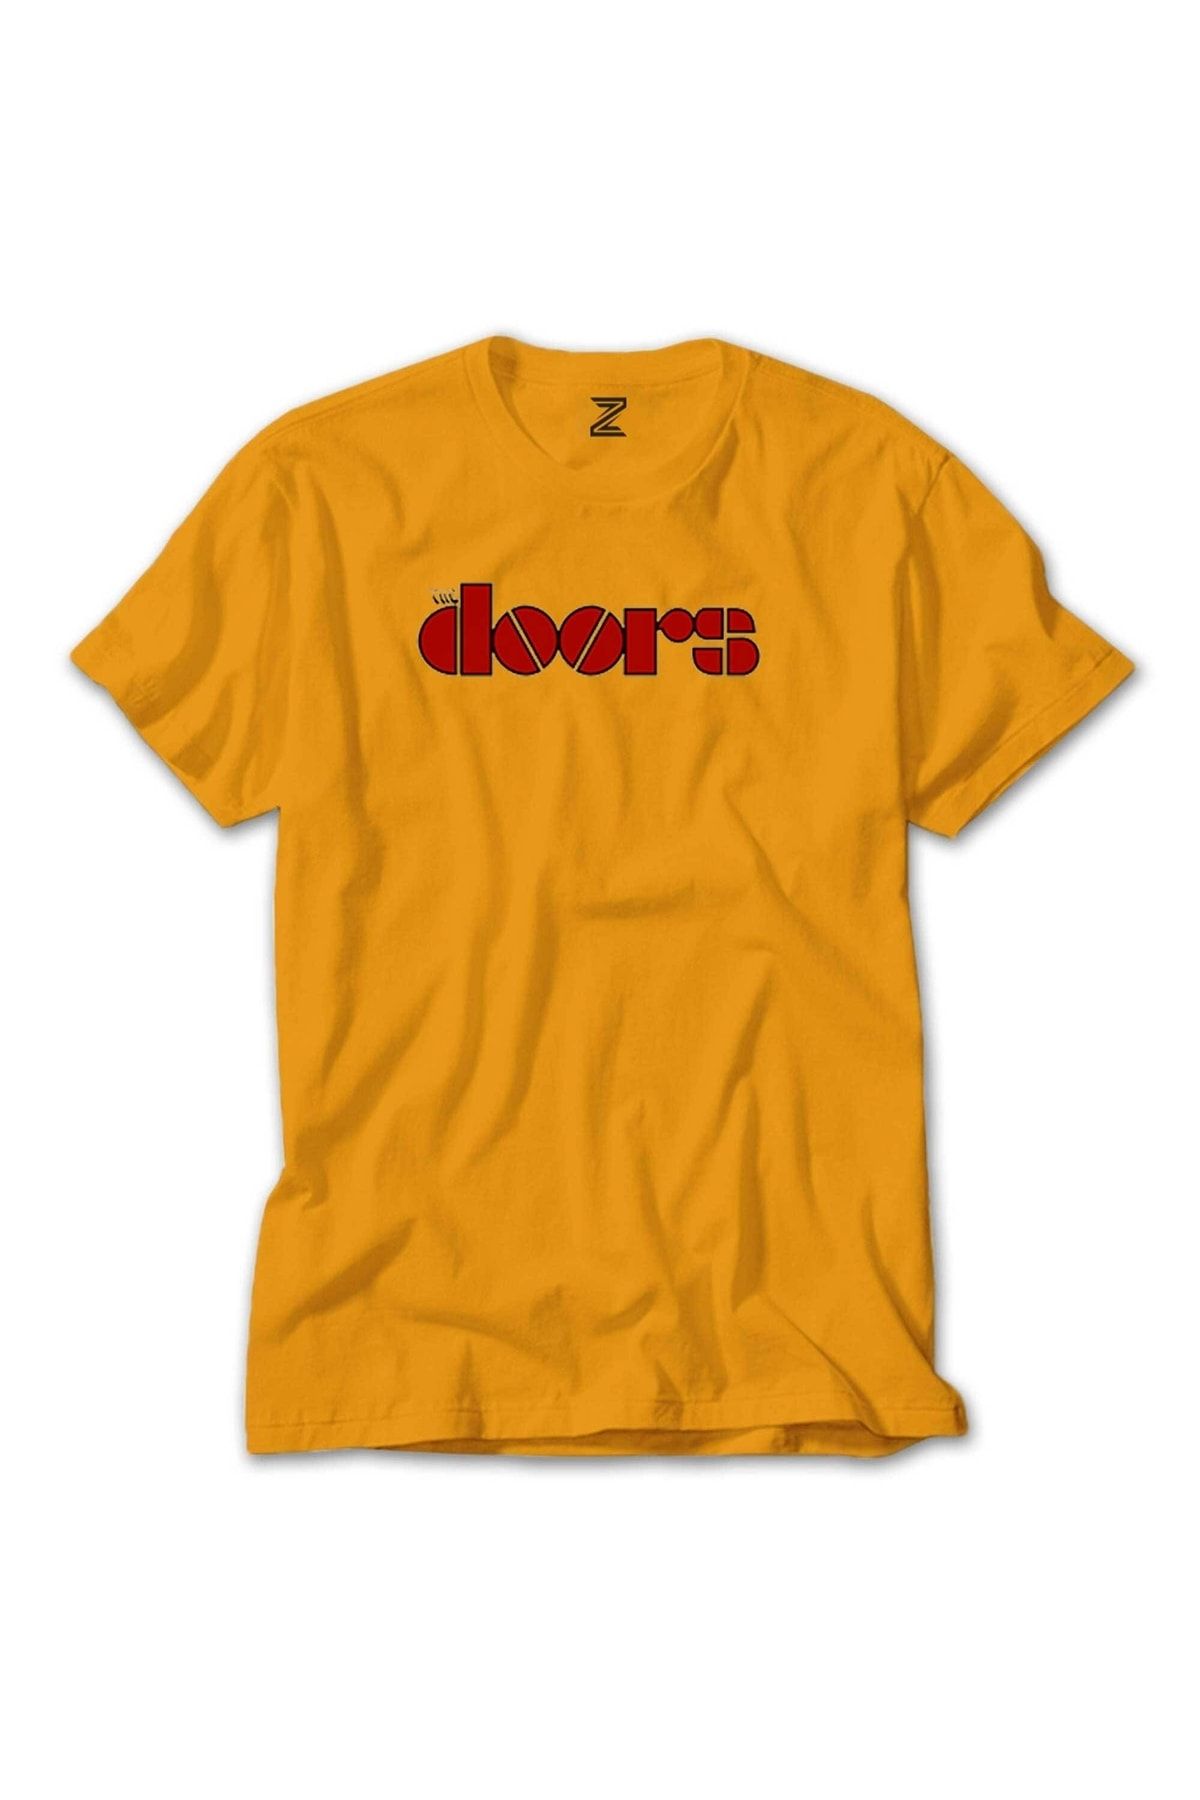 Z zepplin The Doors Logo Red Sarı Tişört